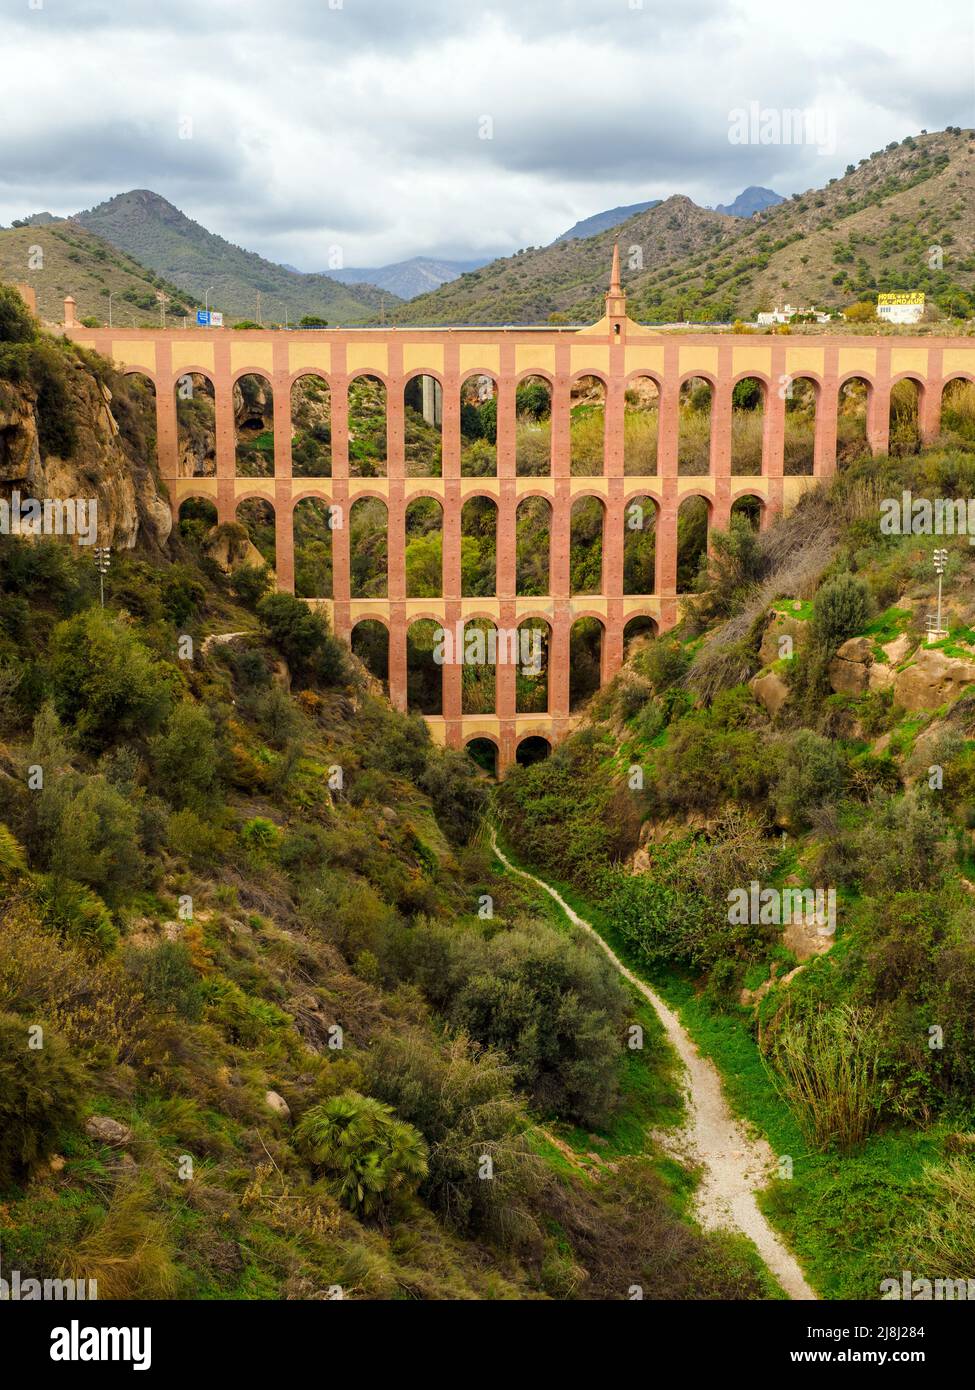 Aqueduct d'aigle près de Nerja construit au 19th siècle - Grenade, Espagne Banque D'Images